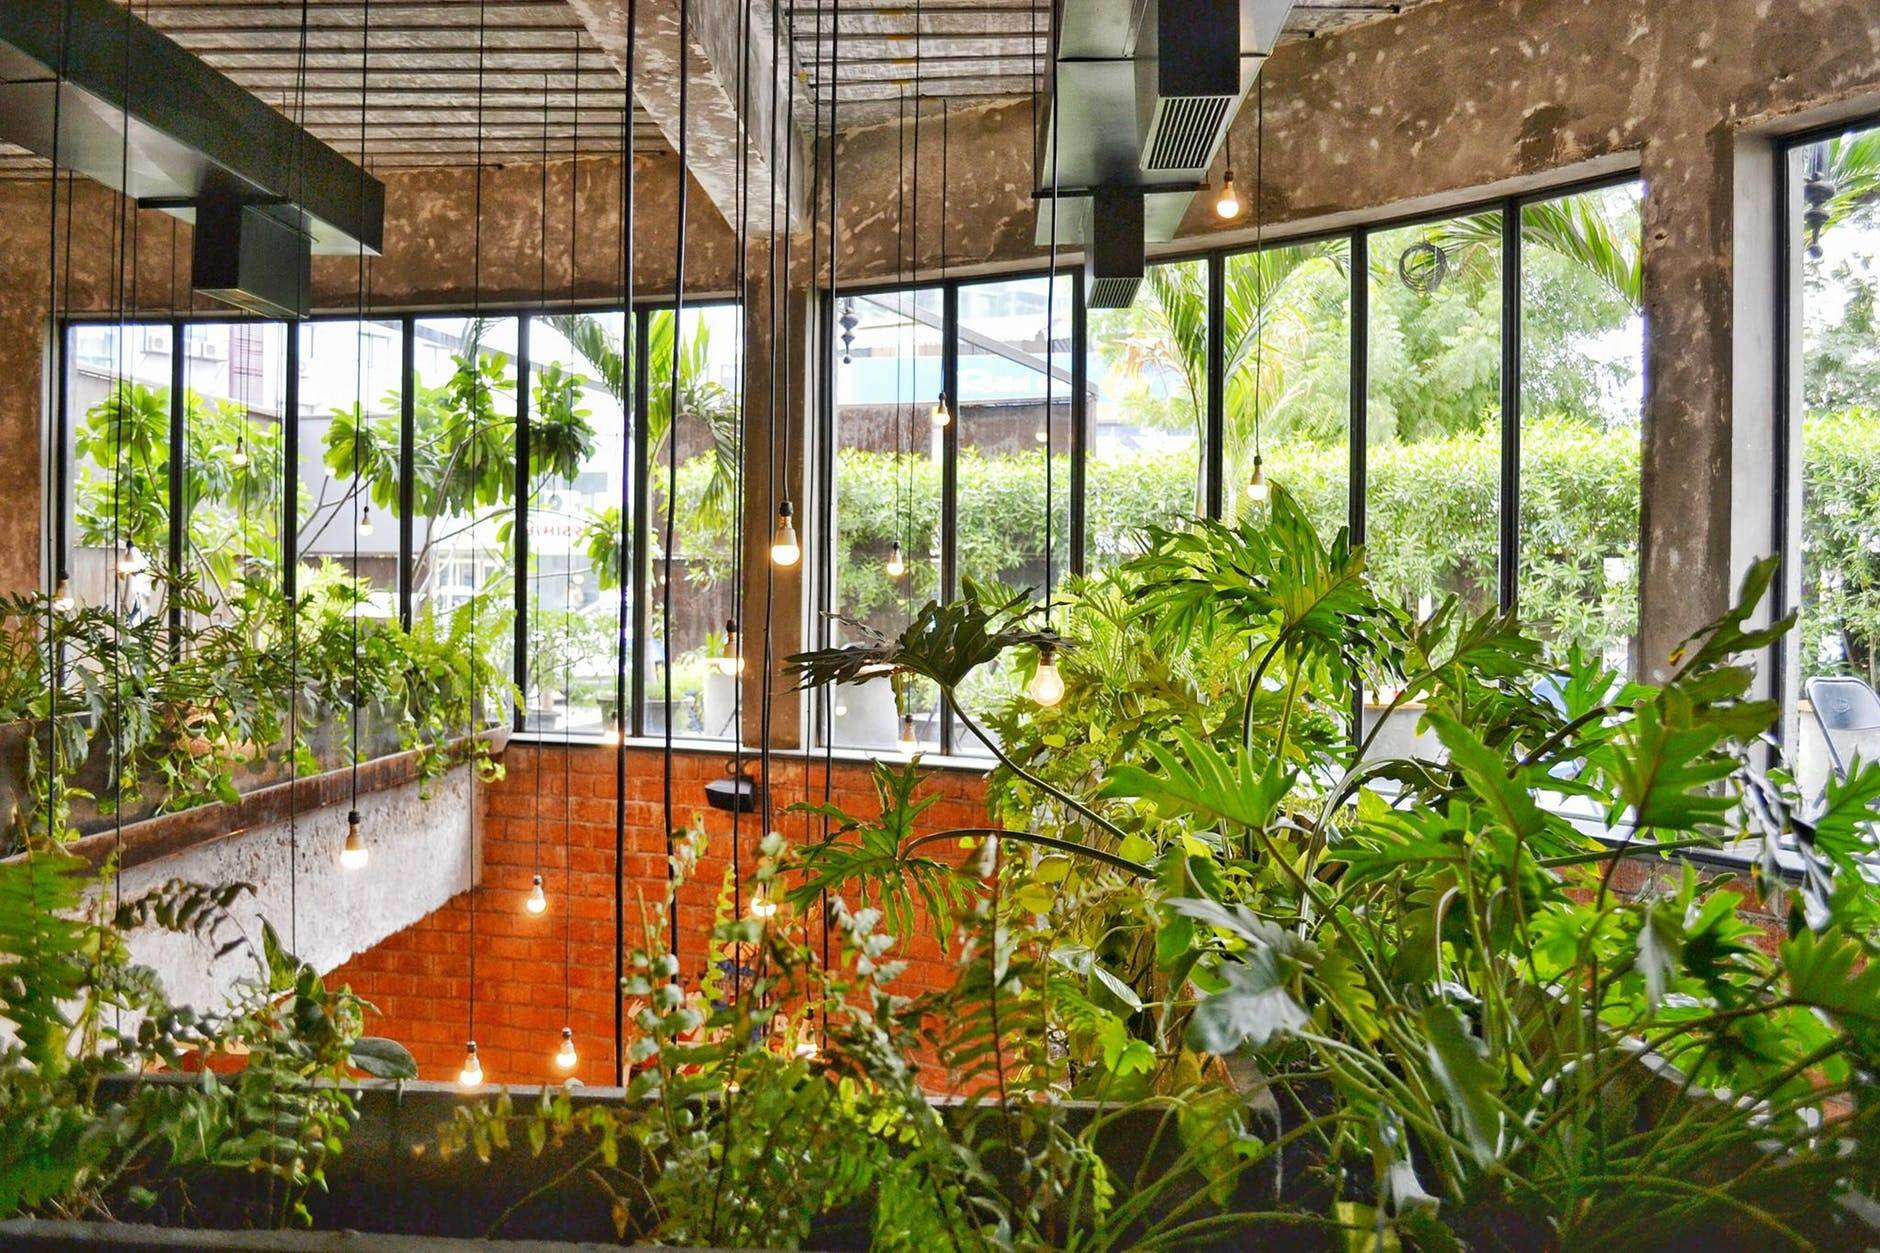 Amazing Indoor Garden Ideas